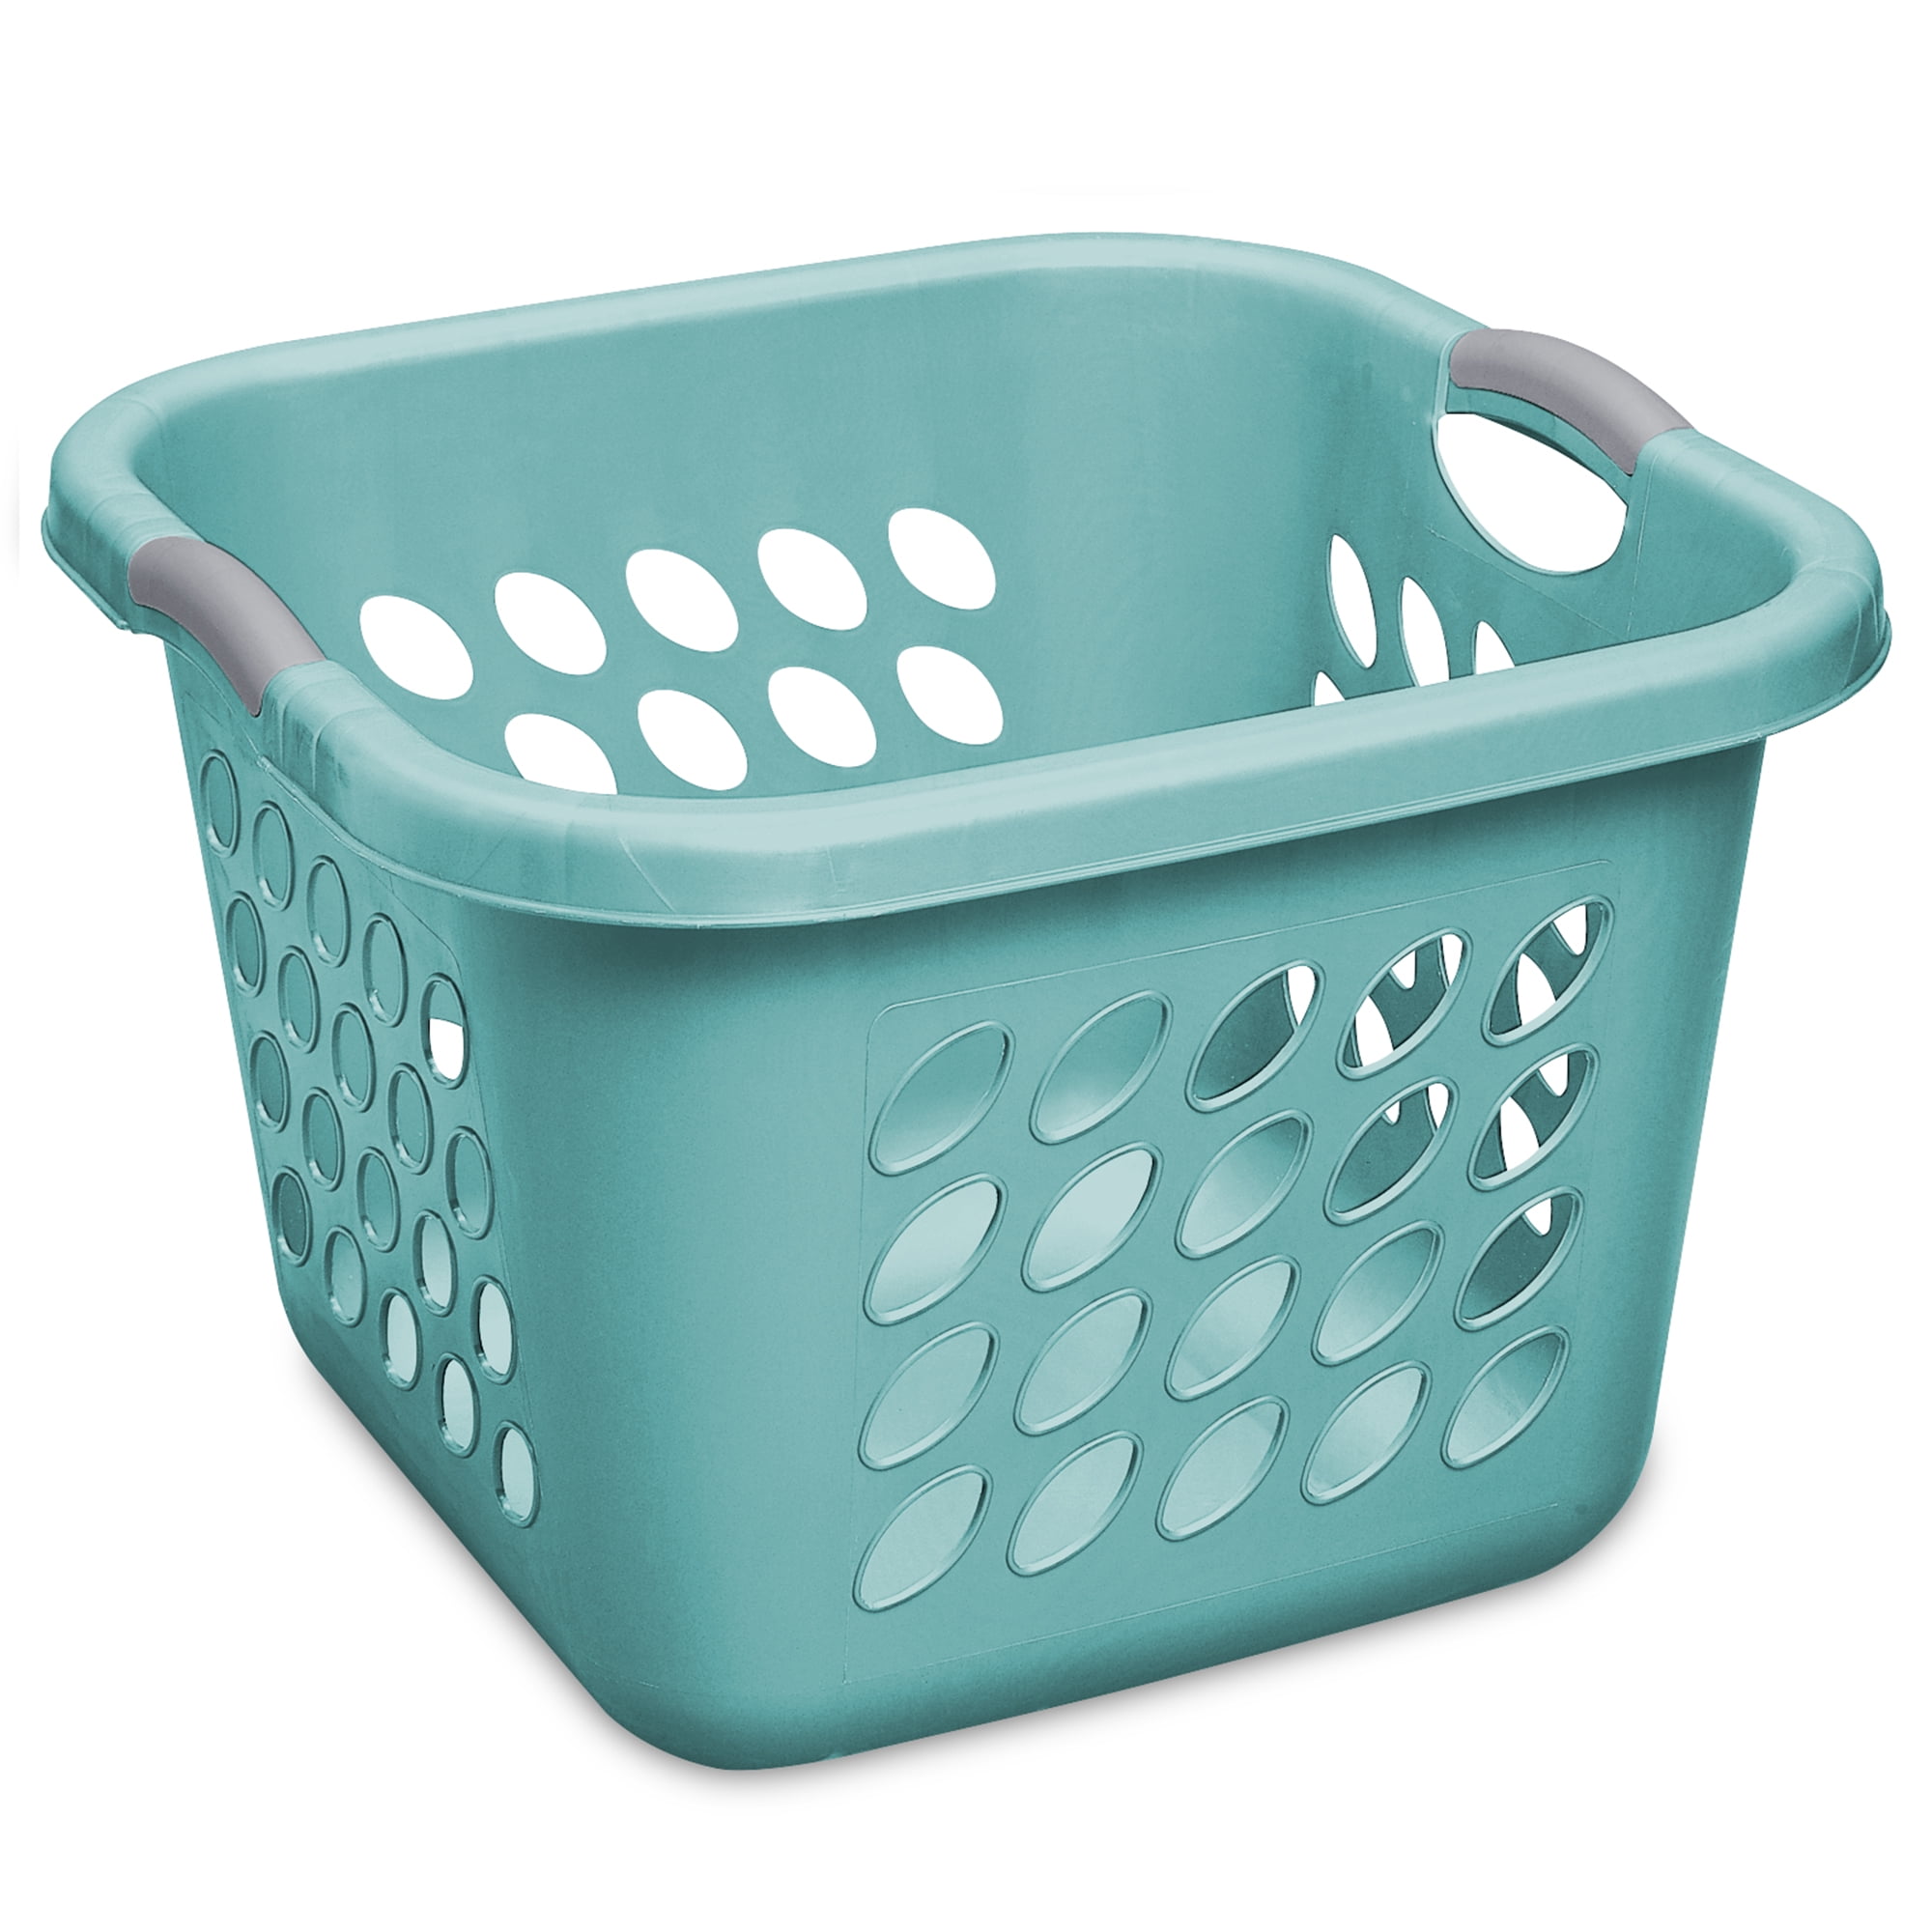 Sterilite 1.5 Bushel Ultra™ Square Laundry Basket, Teal Splash